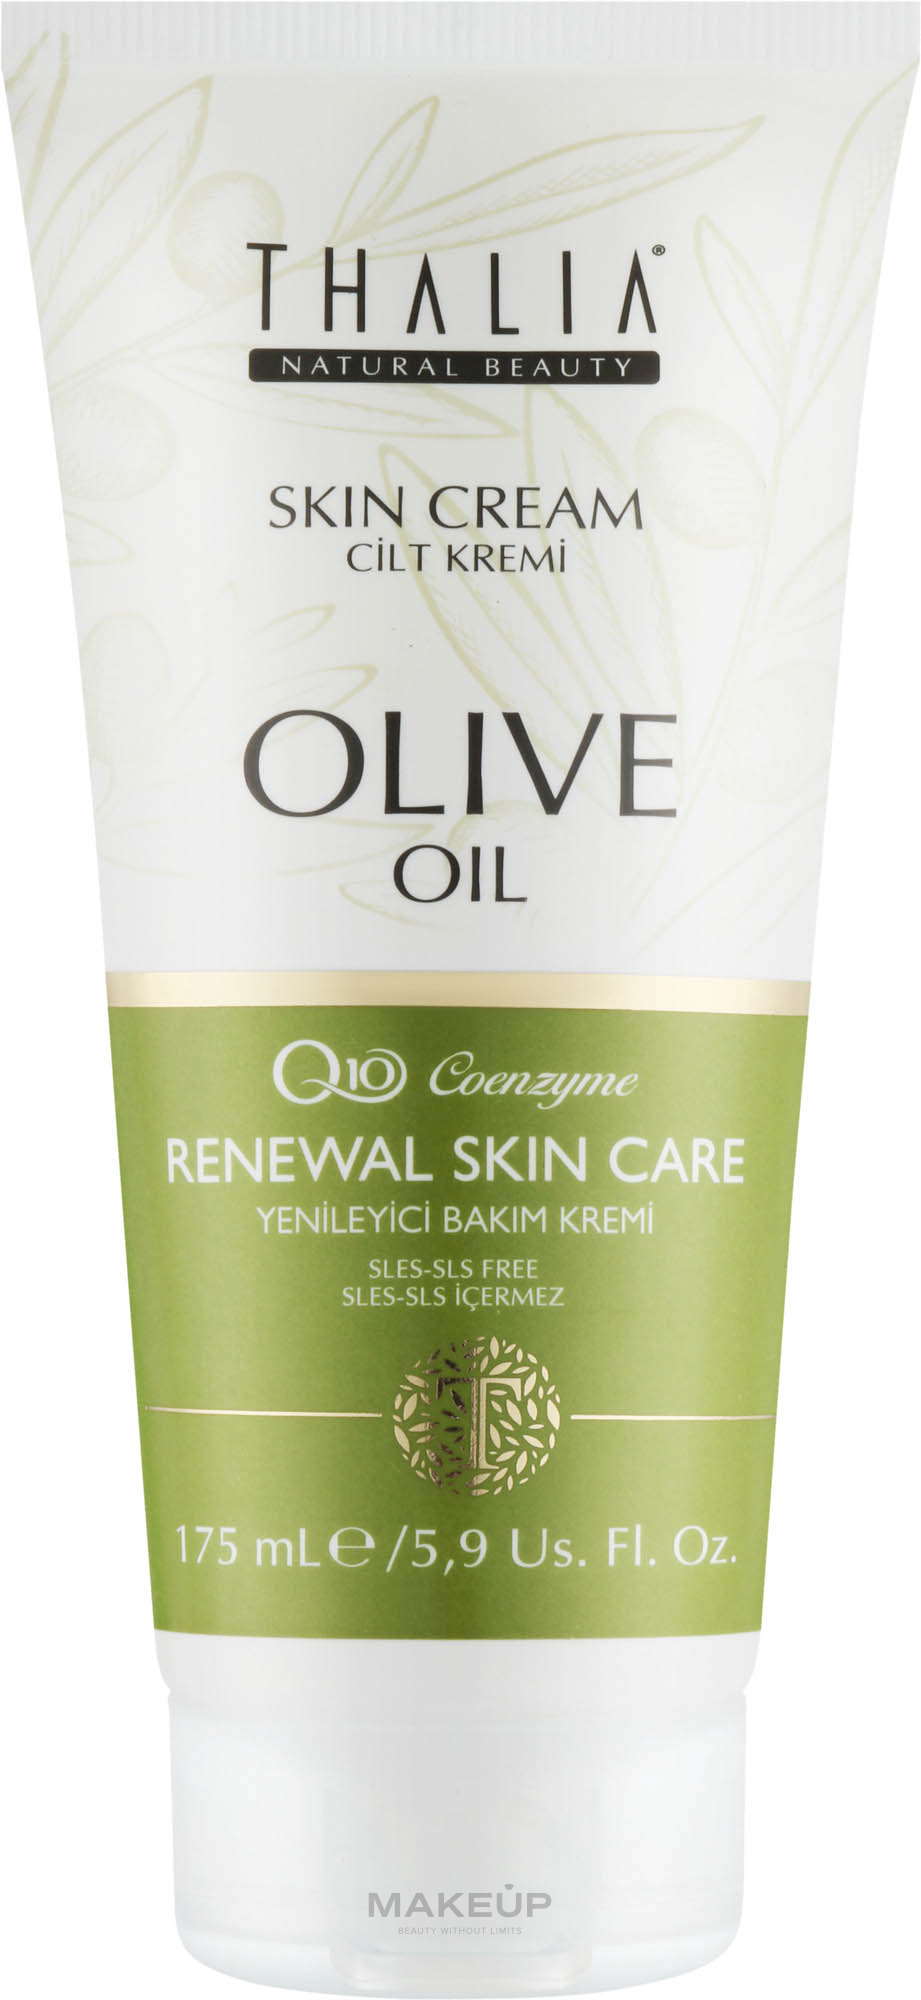 Крем-лифтинг с коэнзимом Q10 и оливковым маслом - Thalia Q10 Coenzime Renewal Skin Care Skin Cream Olive Oil — фото 175ml